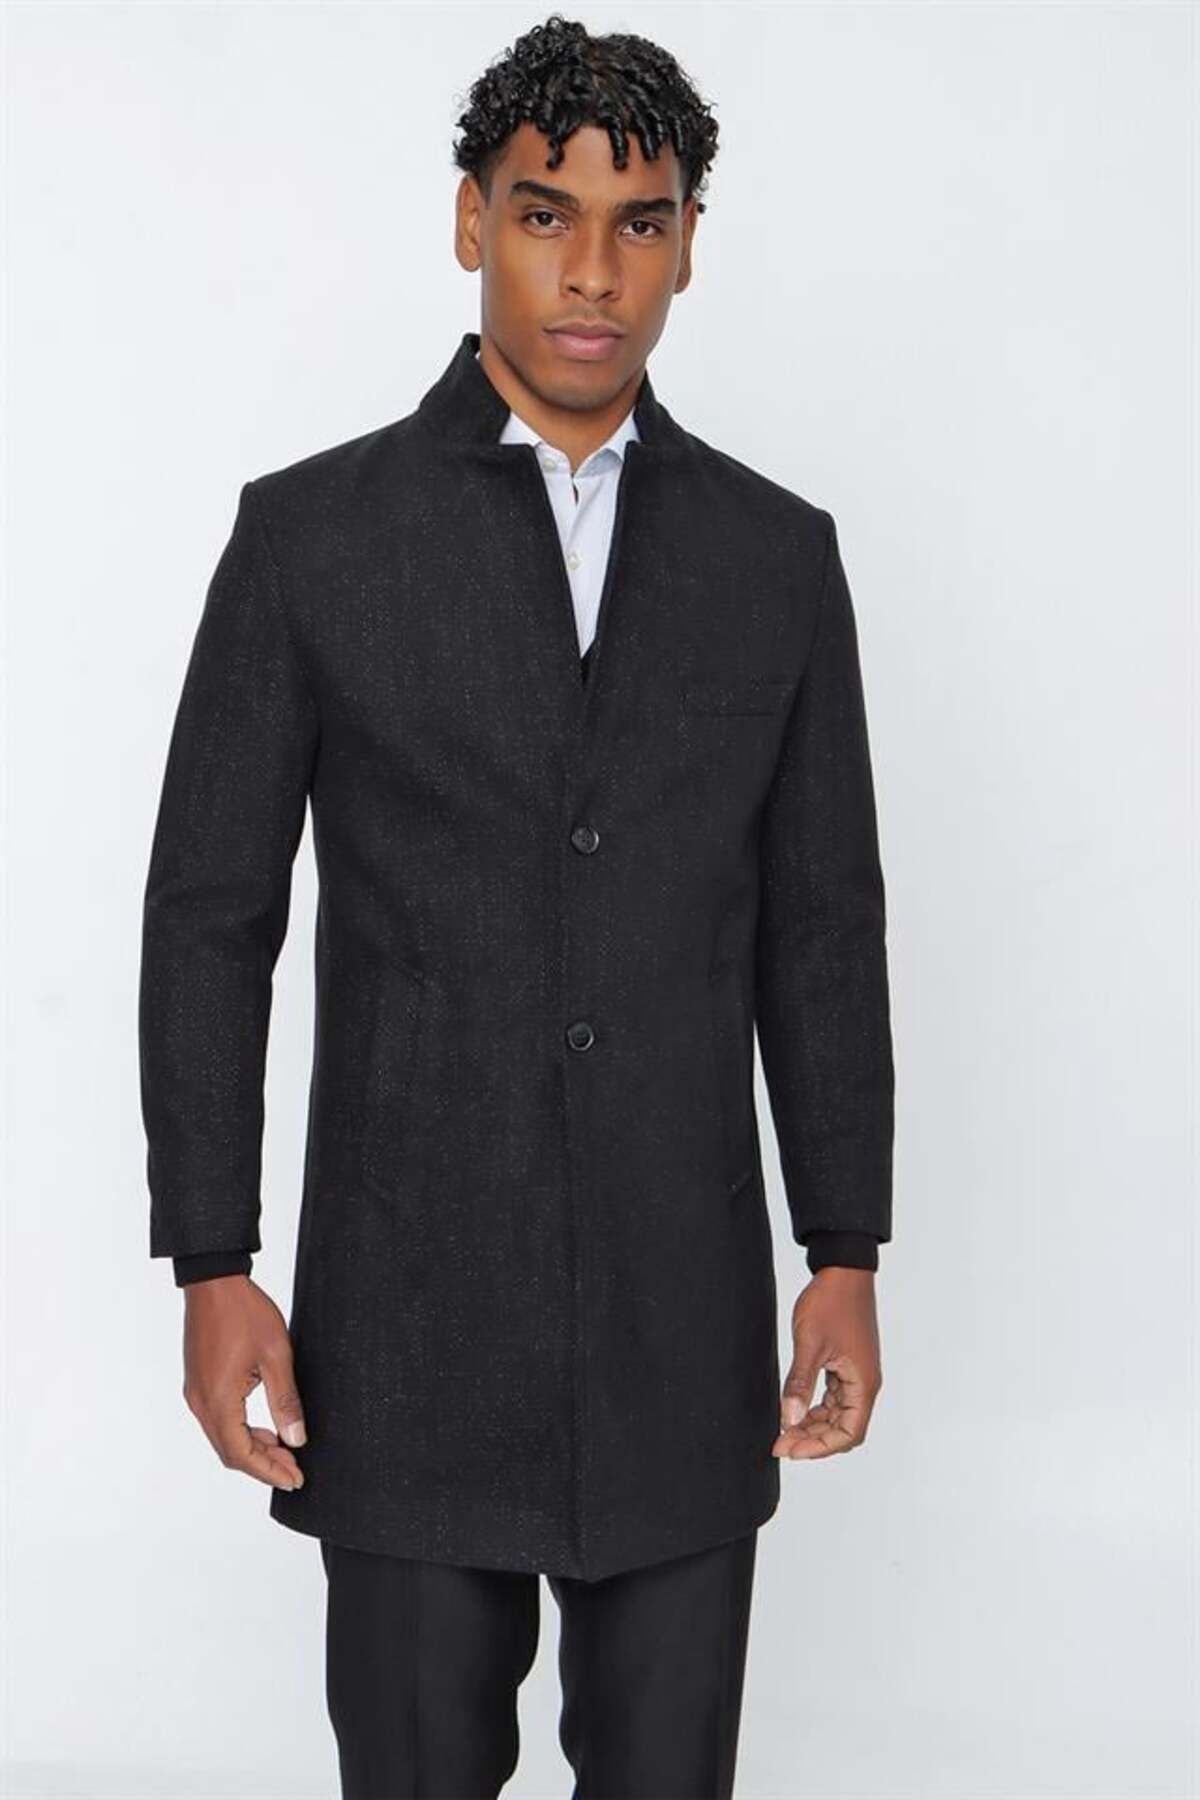 İmza Siyah Kaşe Hakim Yaka Desenli Yünlü Yırtmaçlı Astarlı Slim Fit Dar Kesim Klasik Palto 1005225153